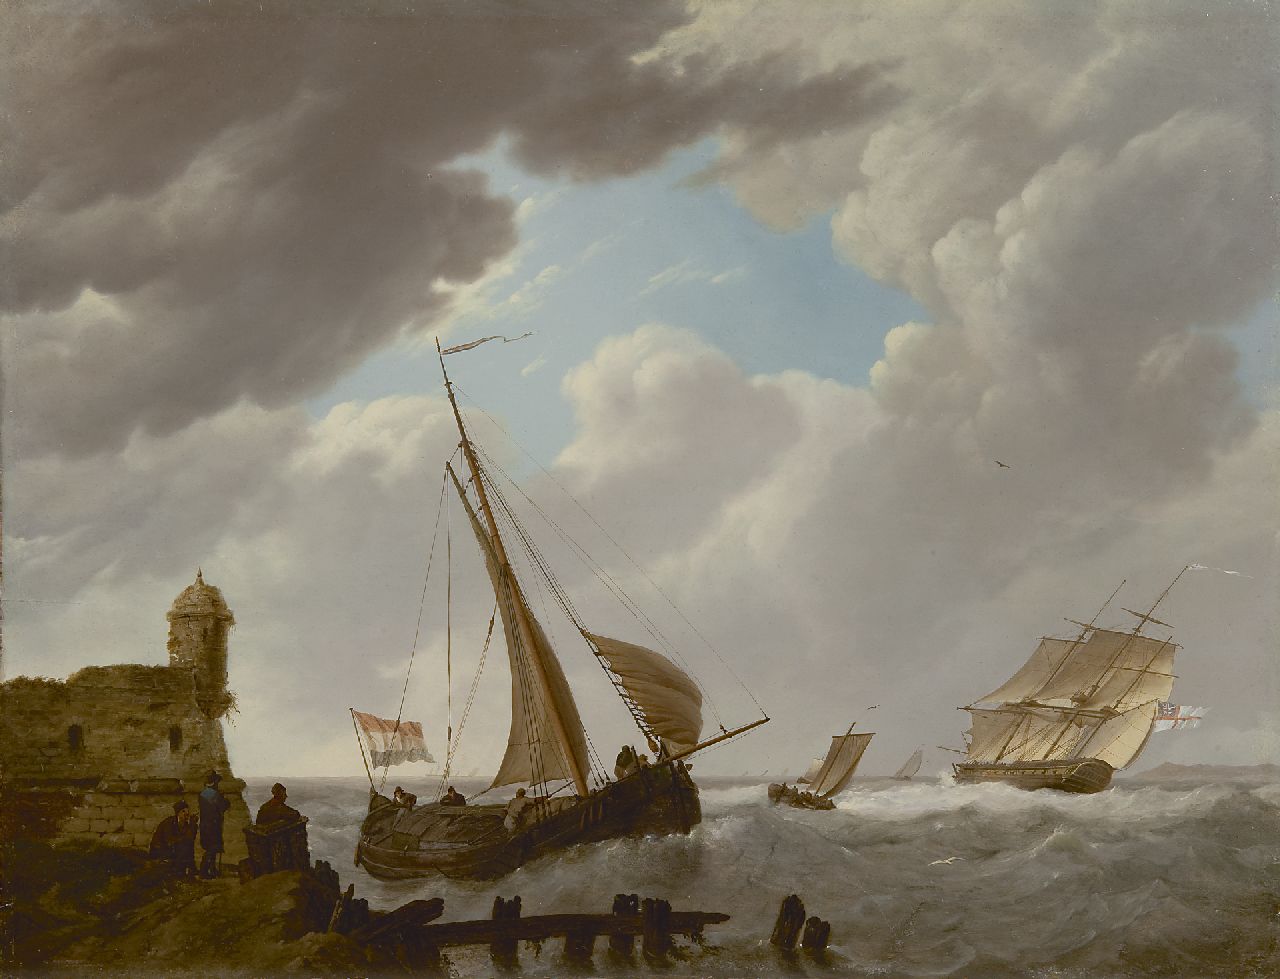 Koekkoek J.H.  | Johannes Hermanus Koekkoek, Tjalk en Engels oorlogsschip in de Zeeuwse wateren, olieverf op paneel 36,0 x 47,0 cm, gesigneerd middenonder